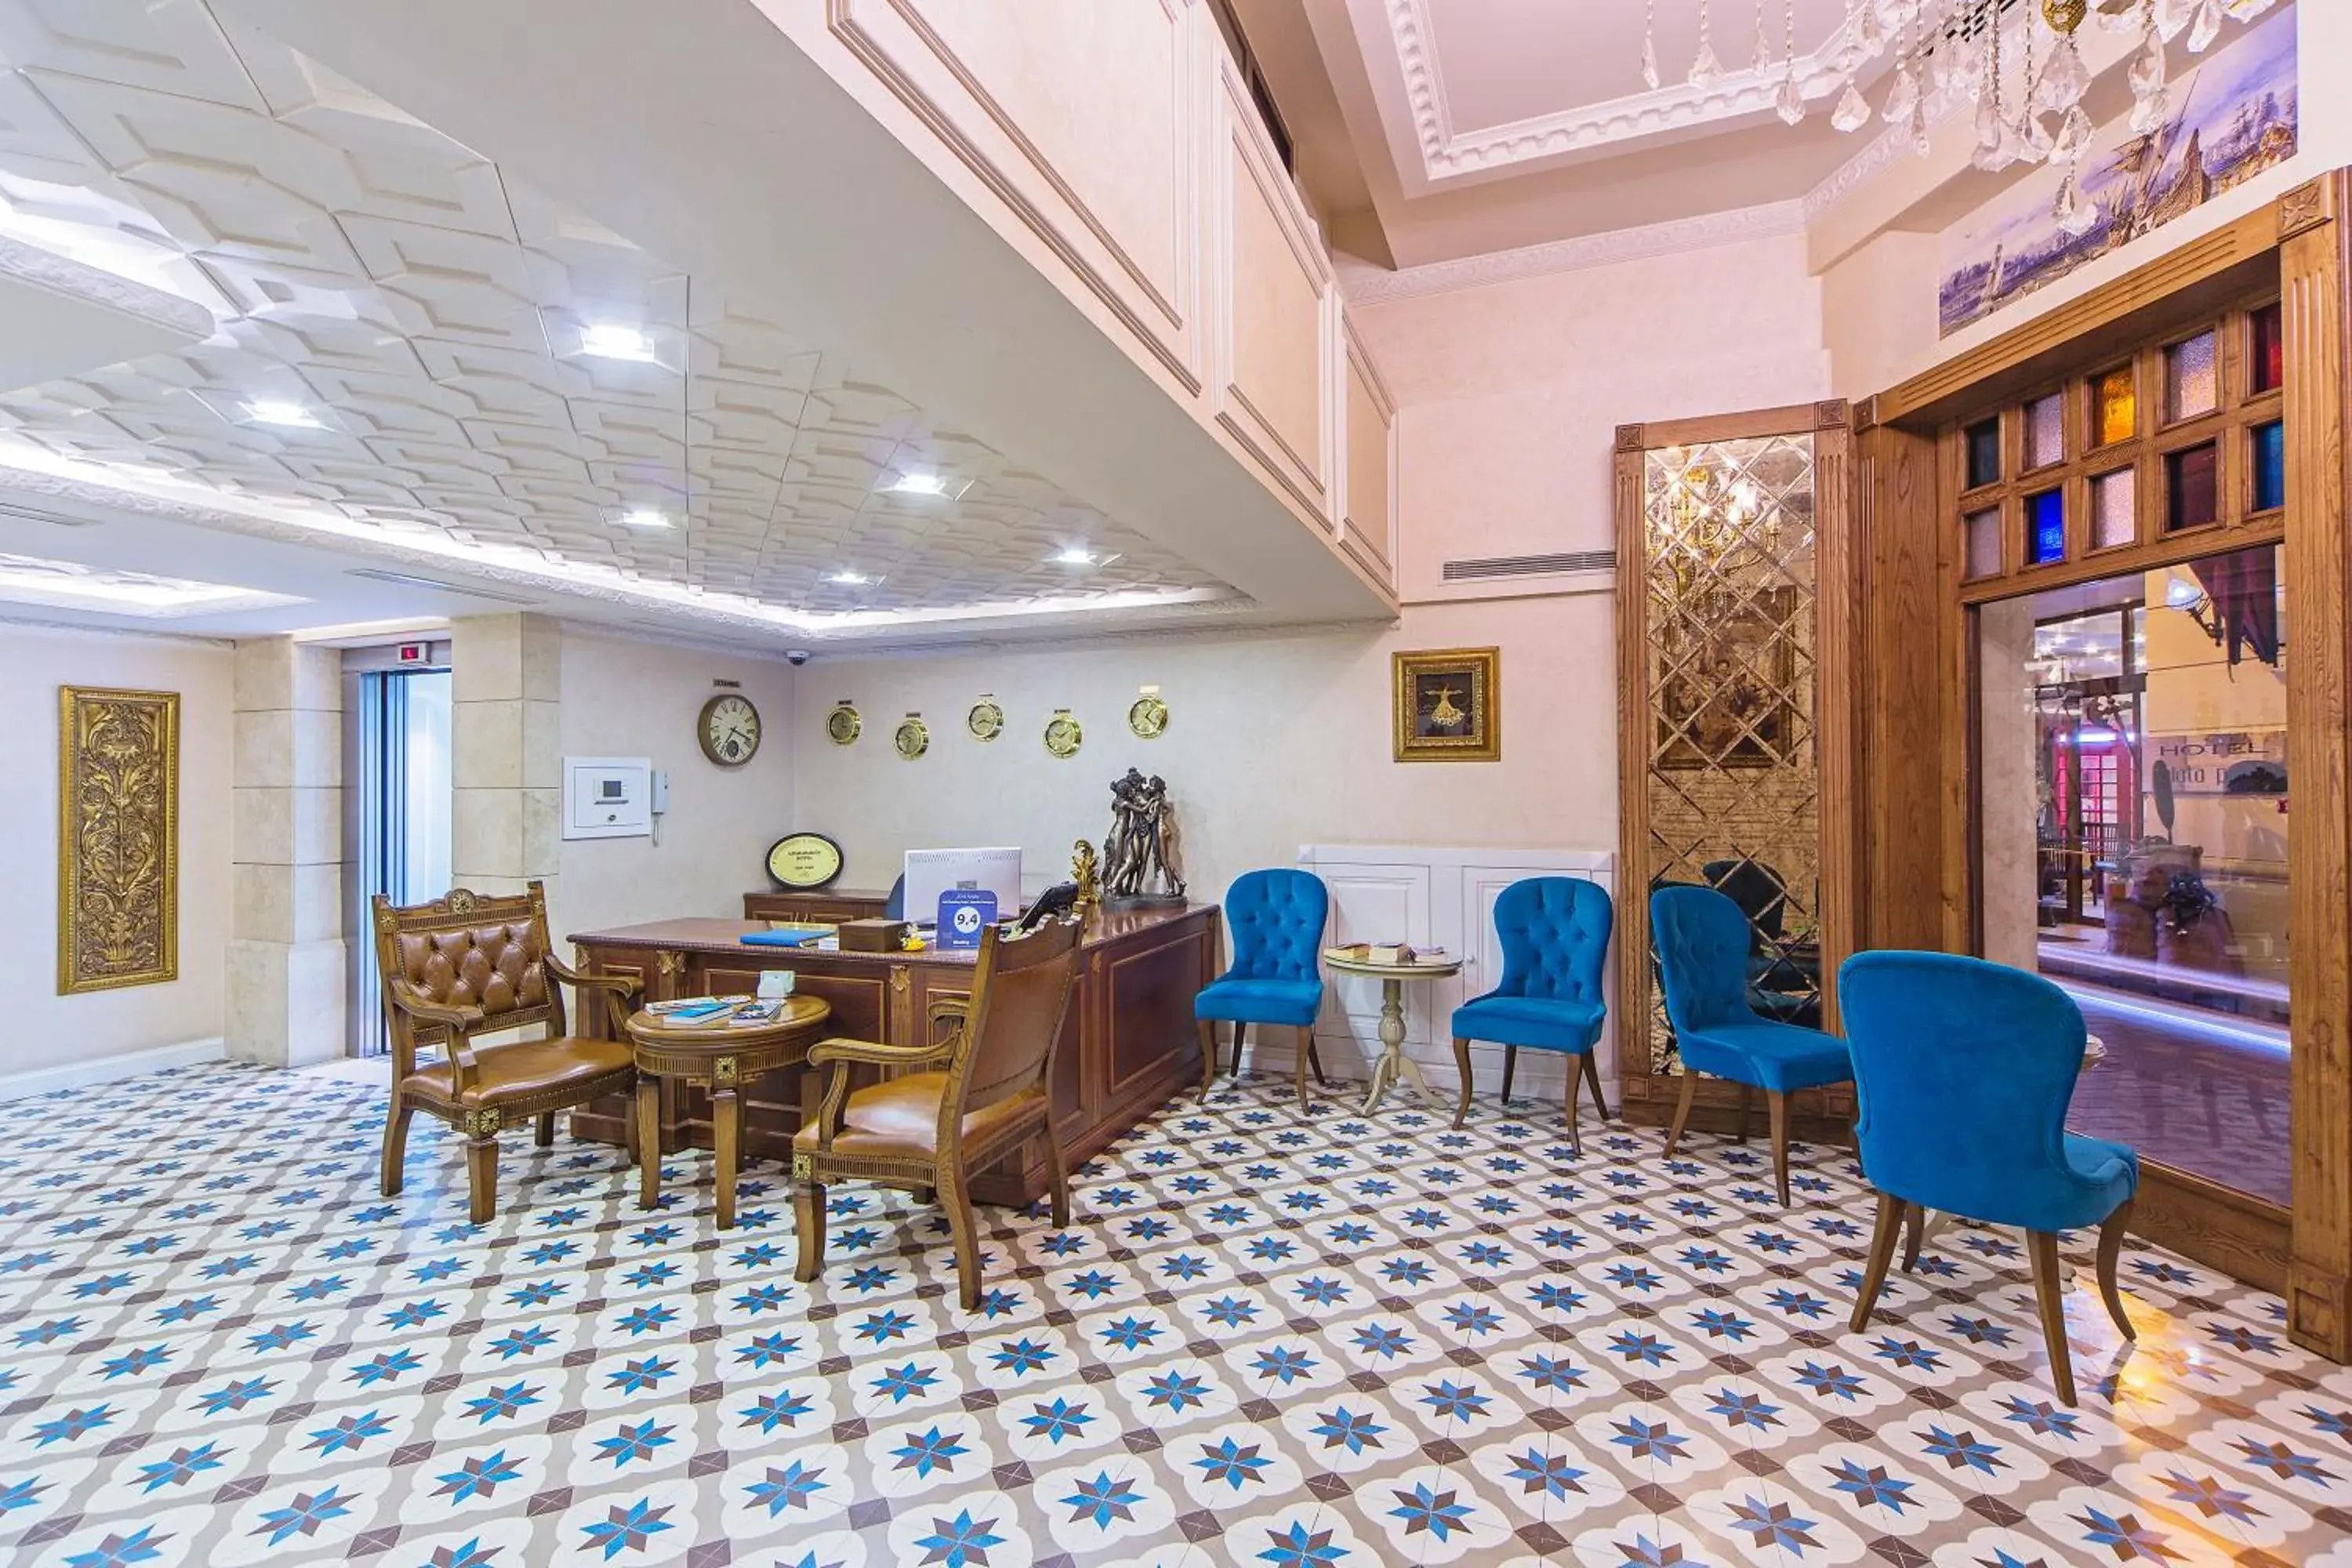 Lobby or reception in Ada Karakoy Hotel